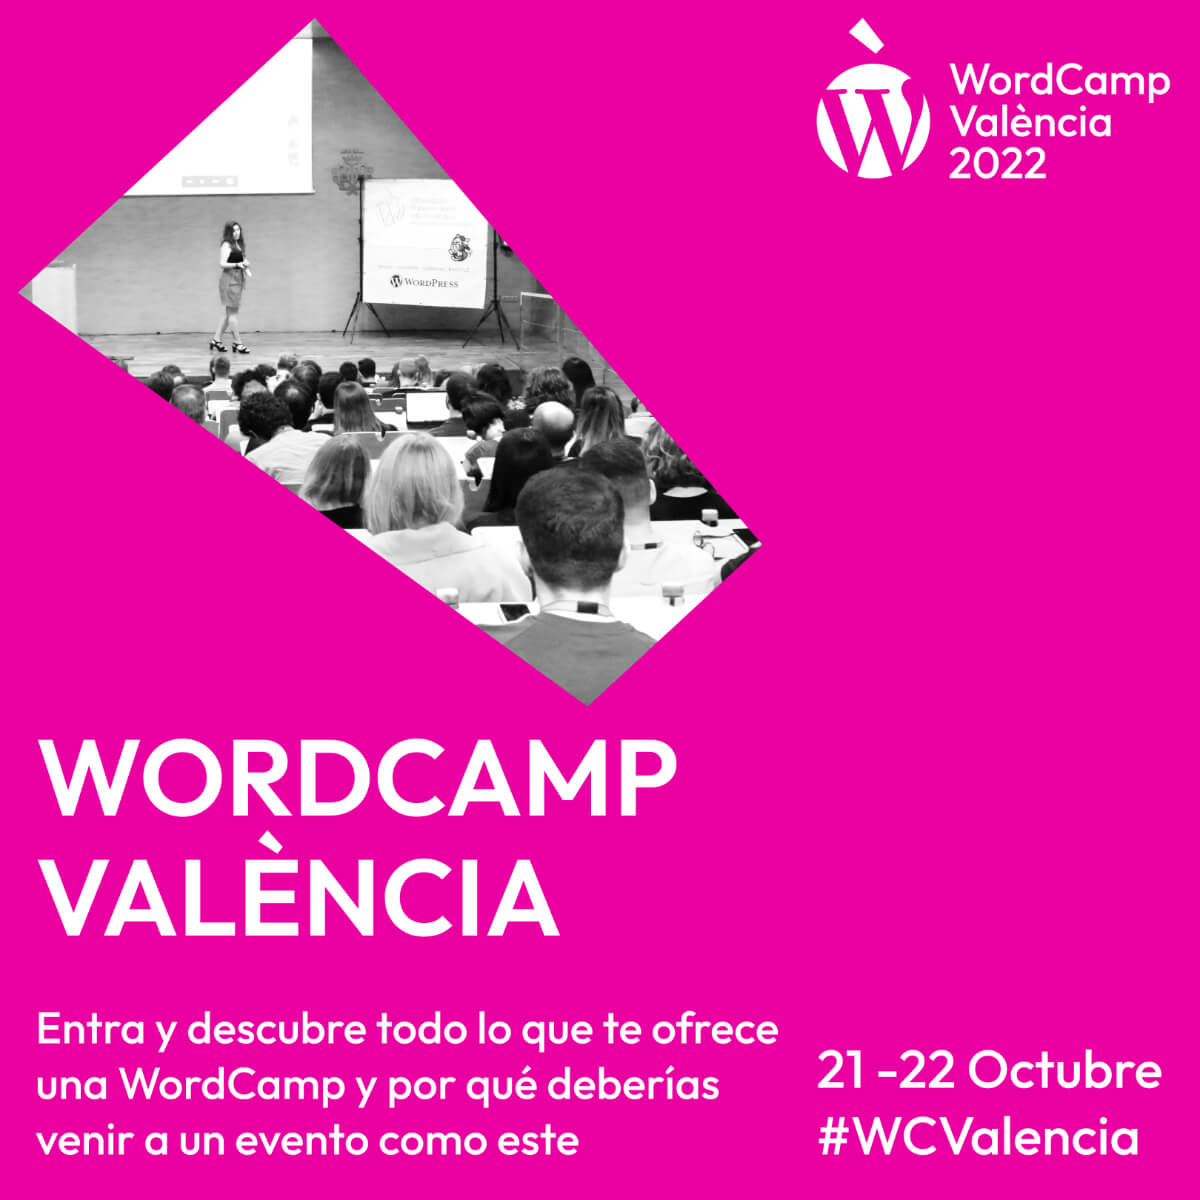 Welcome to WordCamp Valencia, España